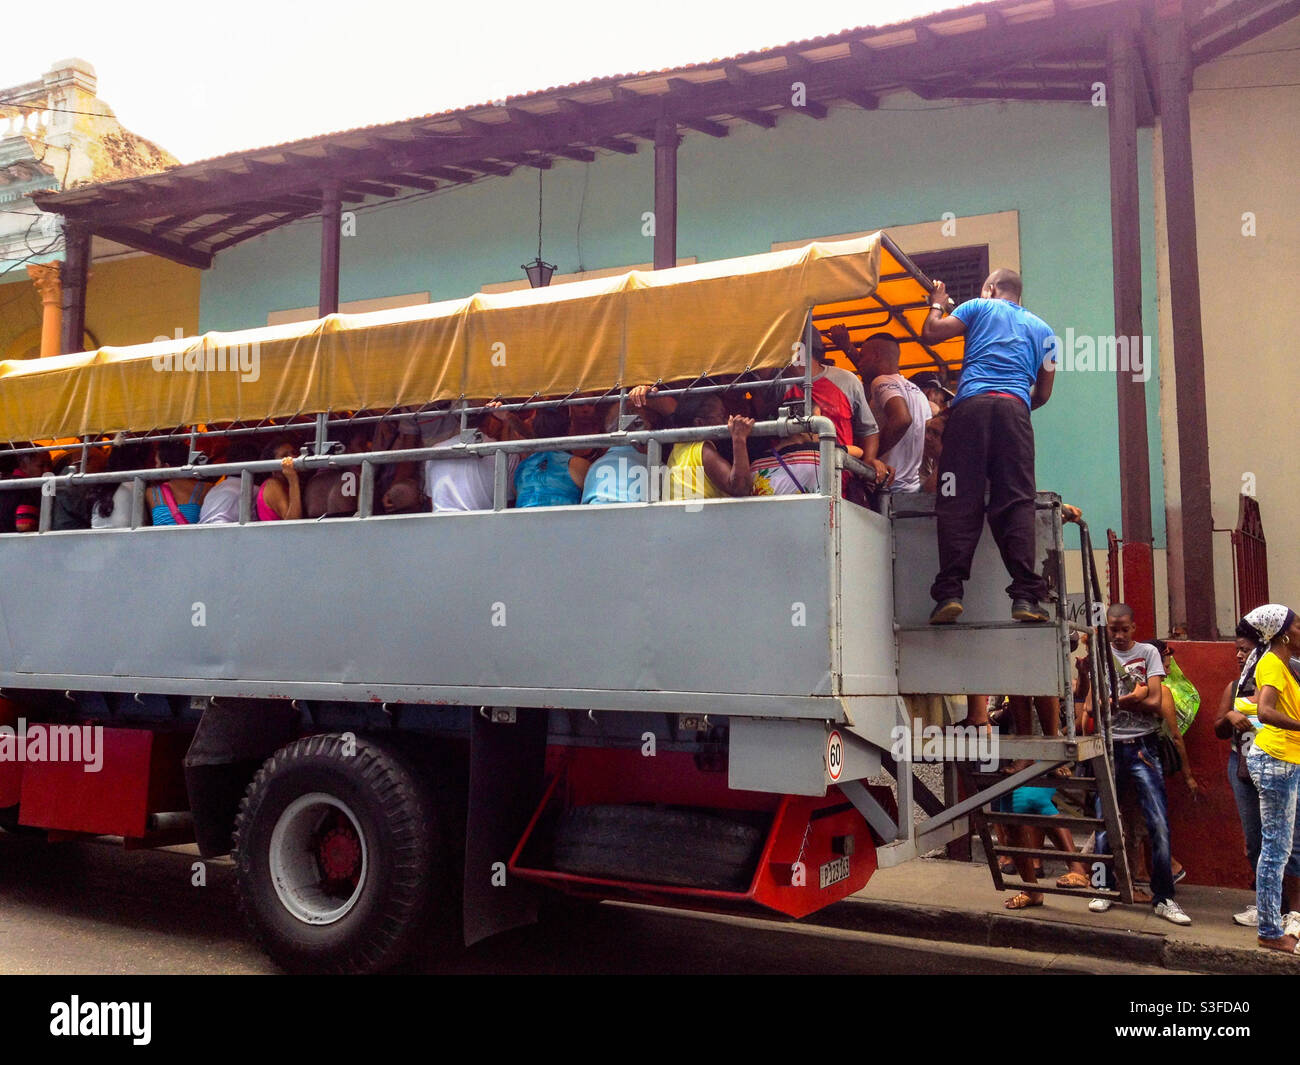 La gente locale si è arenata in un camion usato come trasporto pubblico a Santiago, Cuba Foto Stock